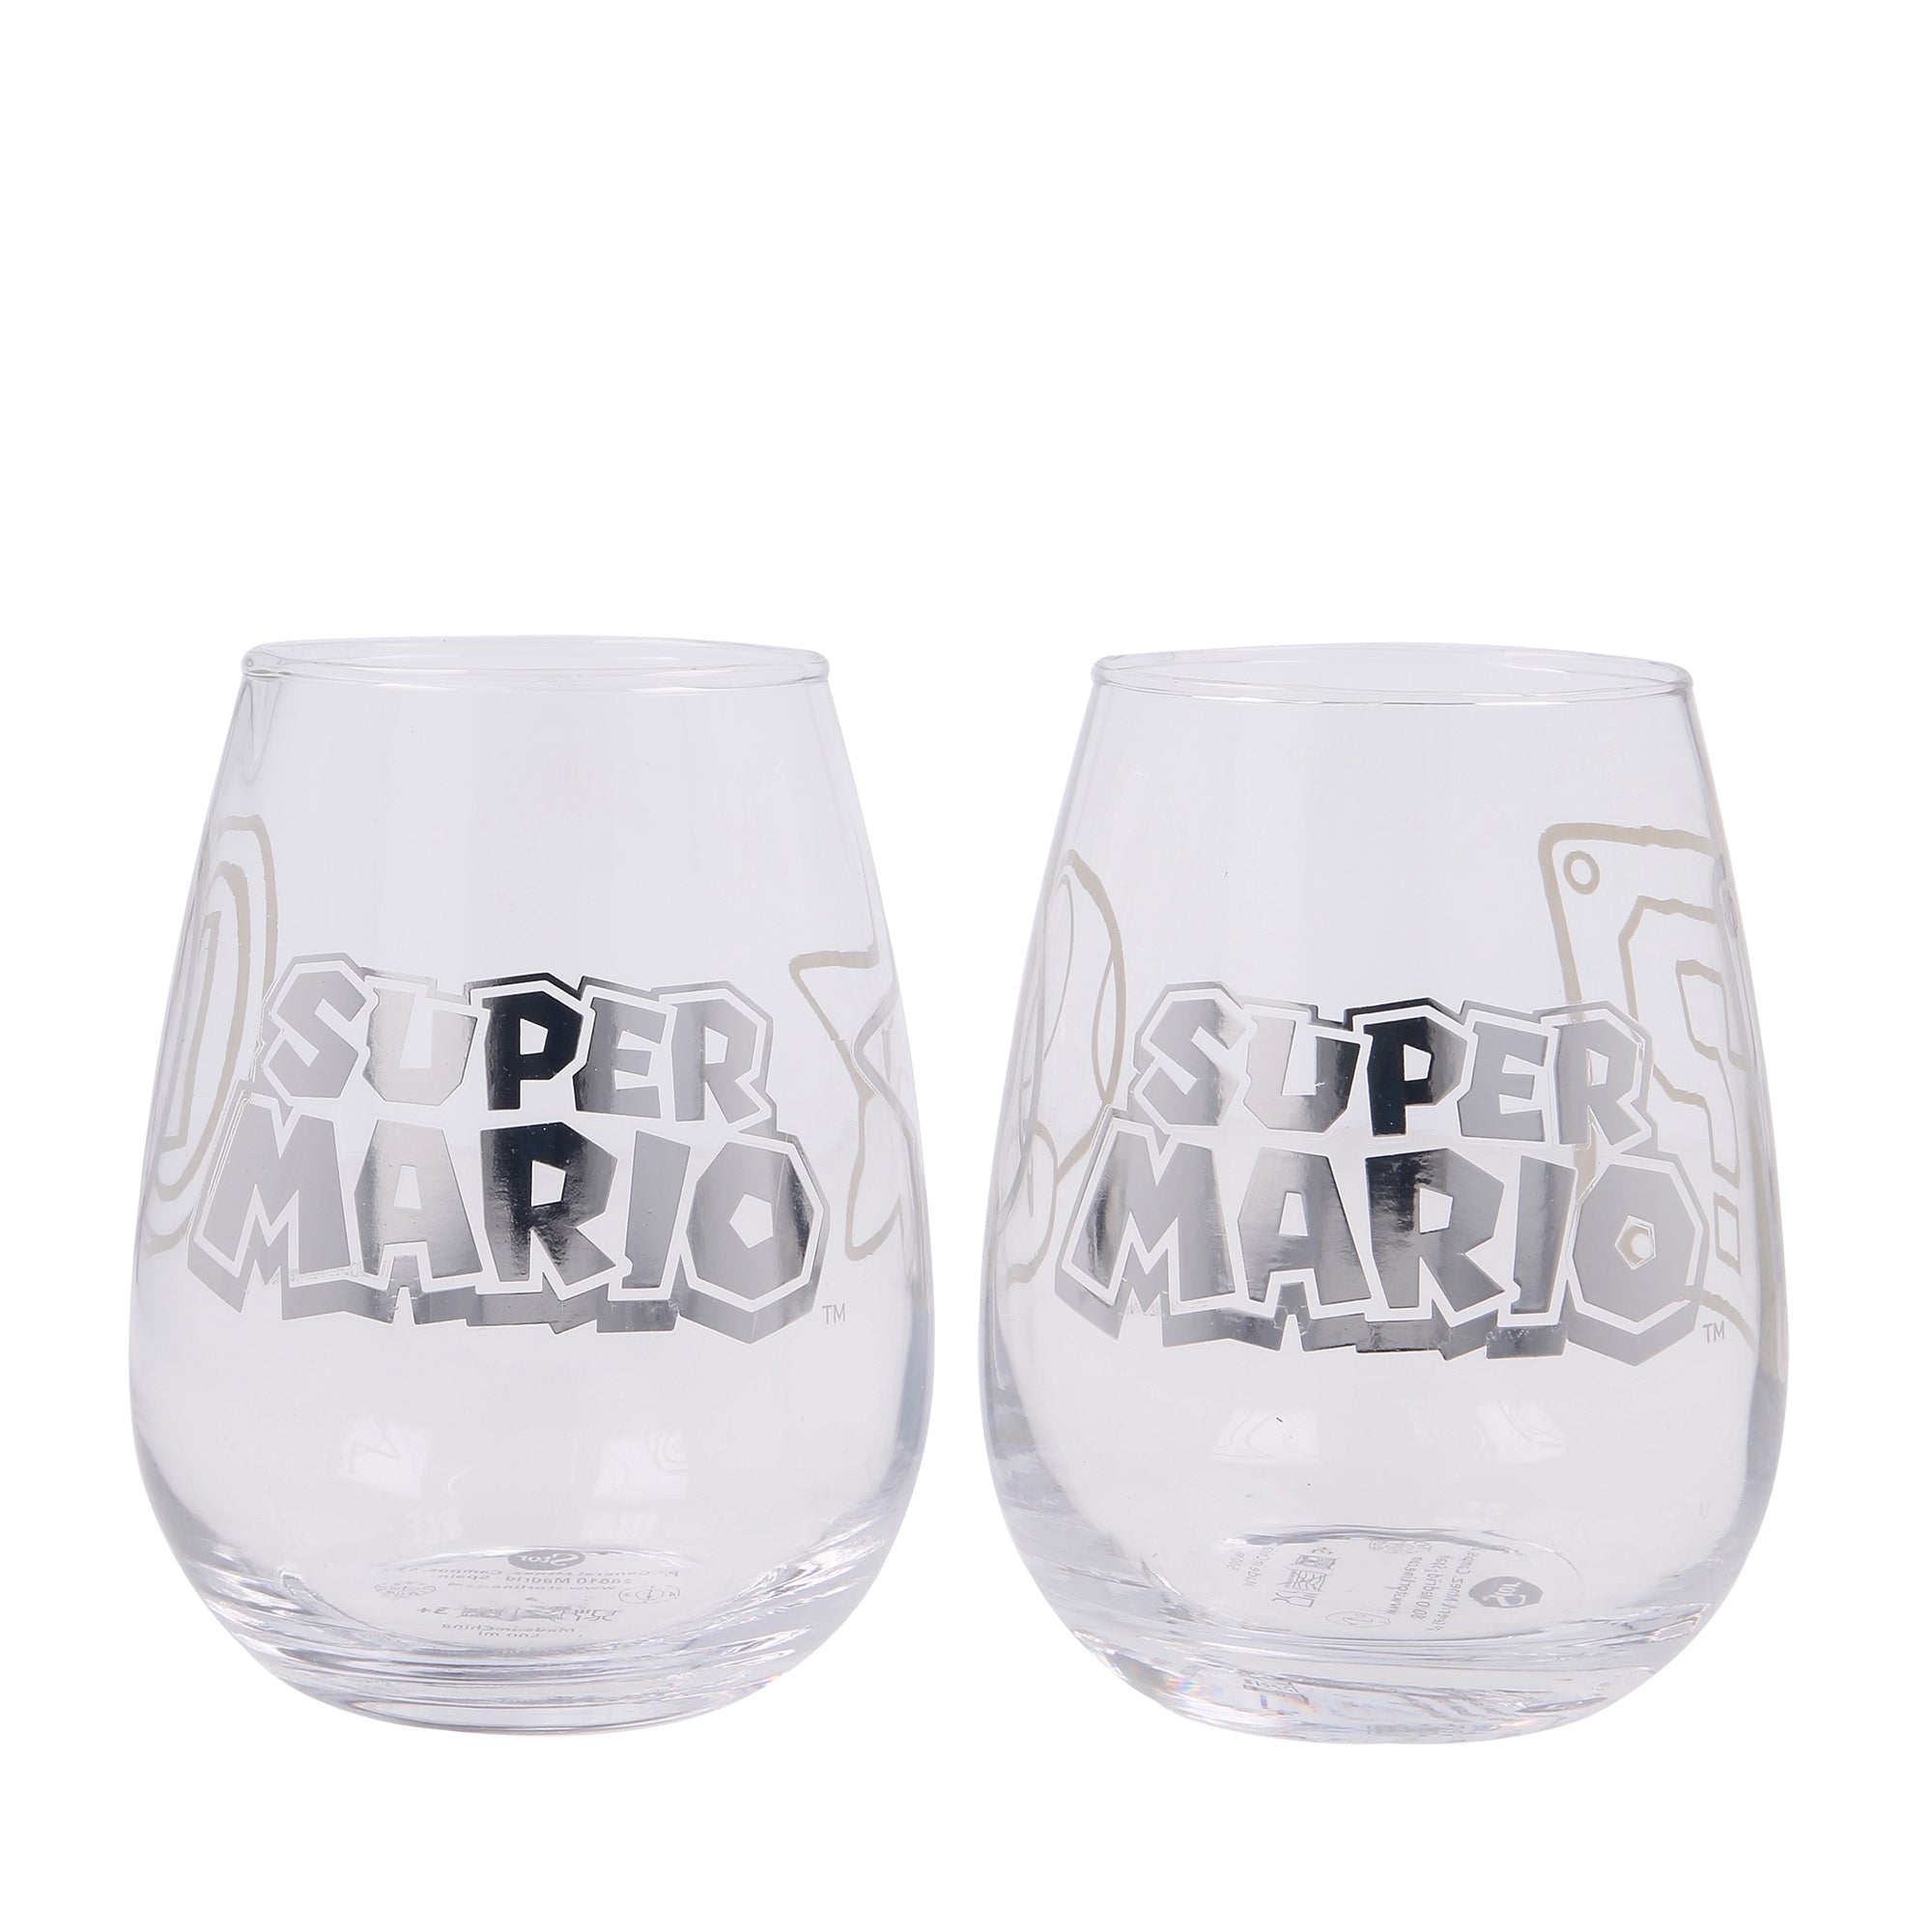 Super Mario - 2 Kristallglasset